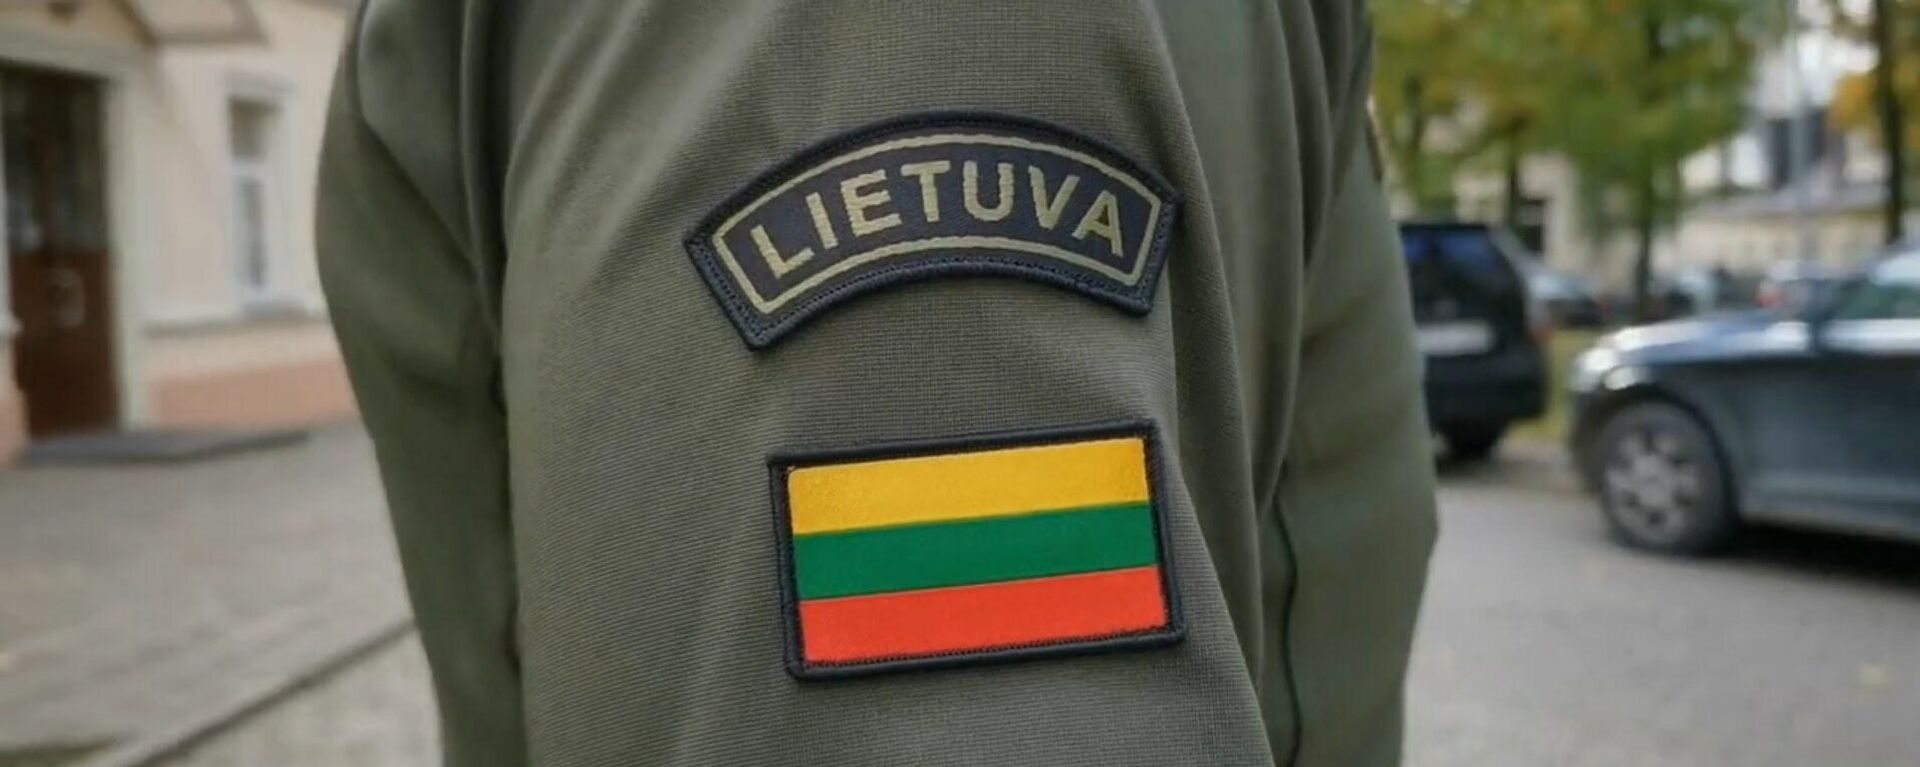 Ševronas ant pasieniečio uniformos Lietuvoje - Sputnik Lietuva, 1920, 10.05.2022